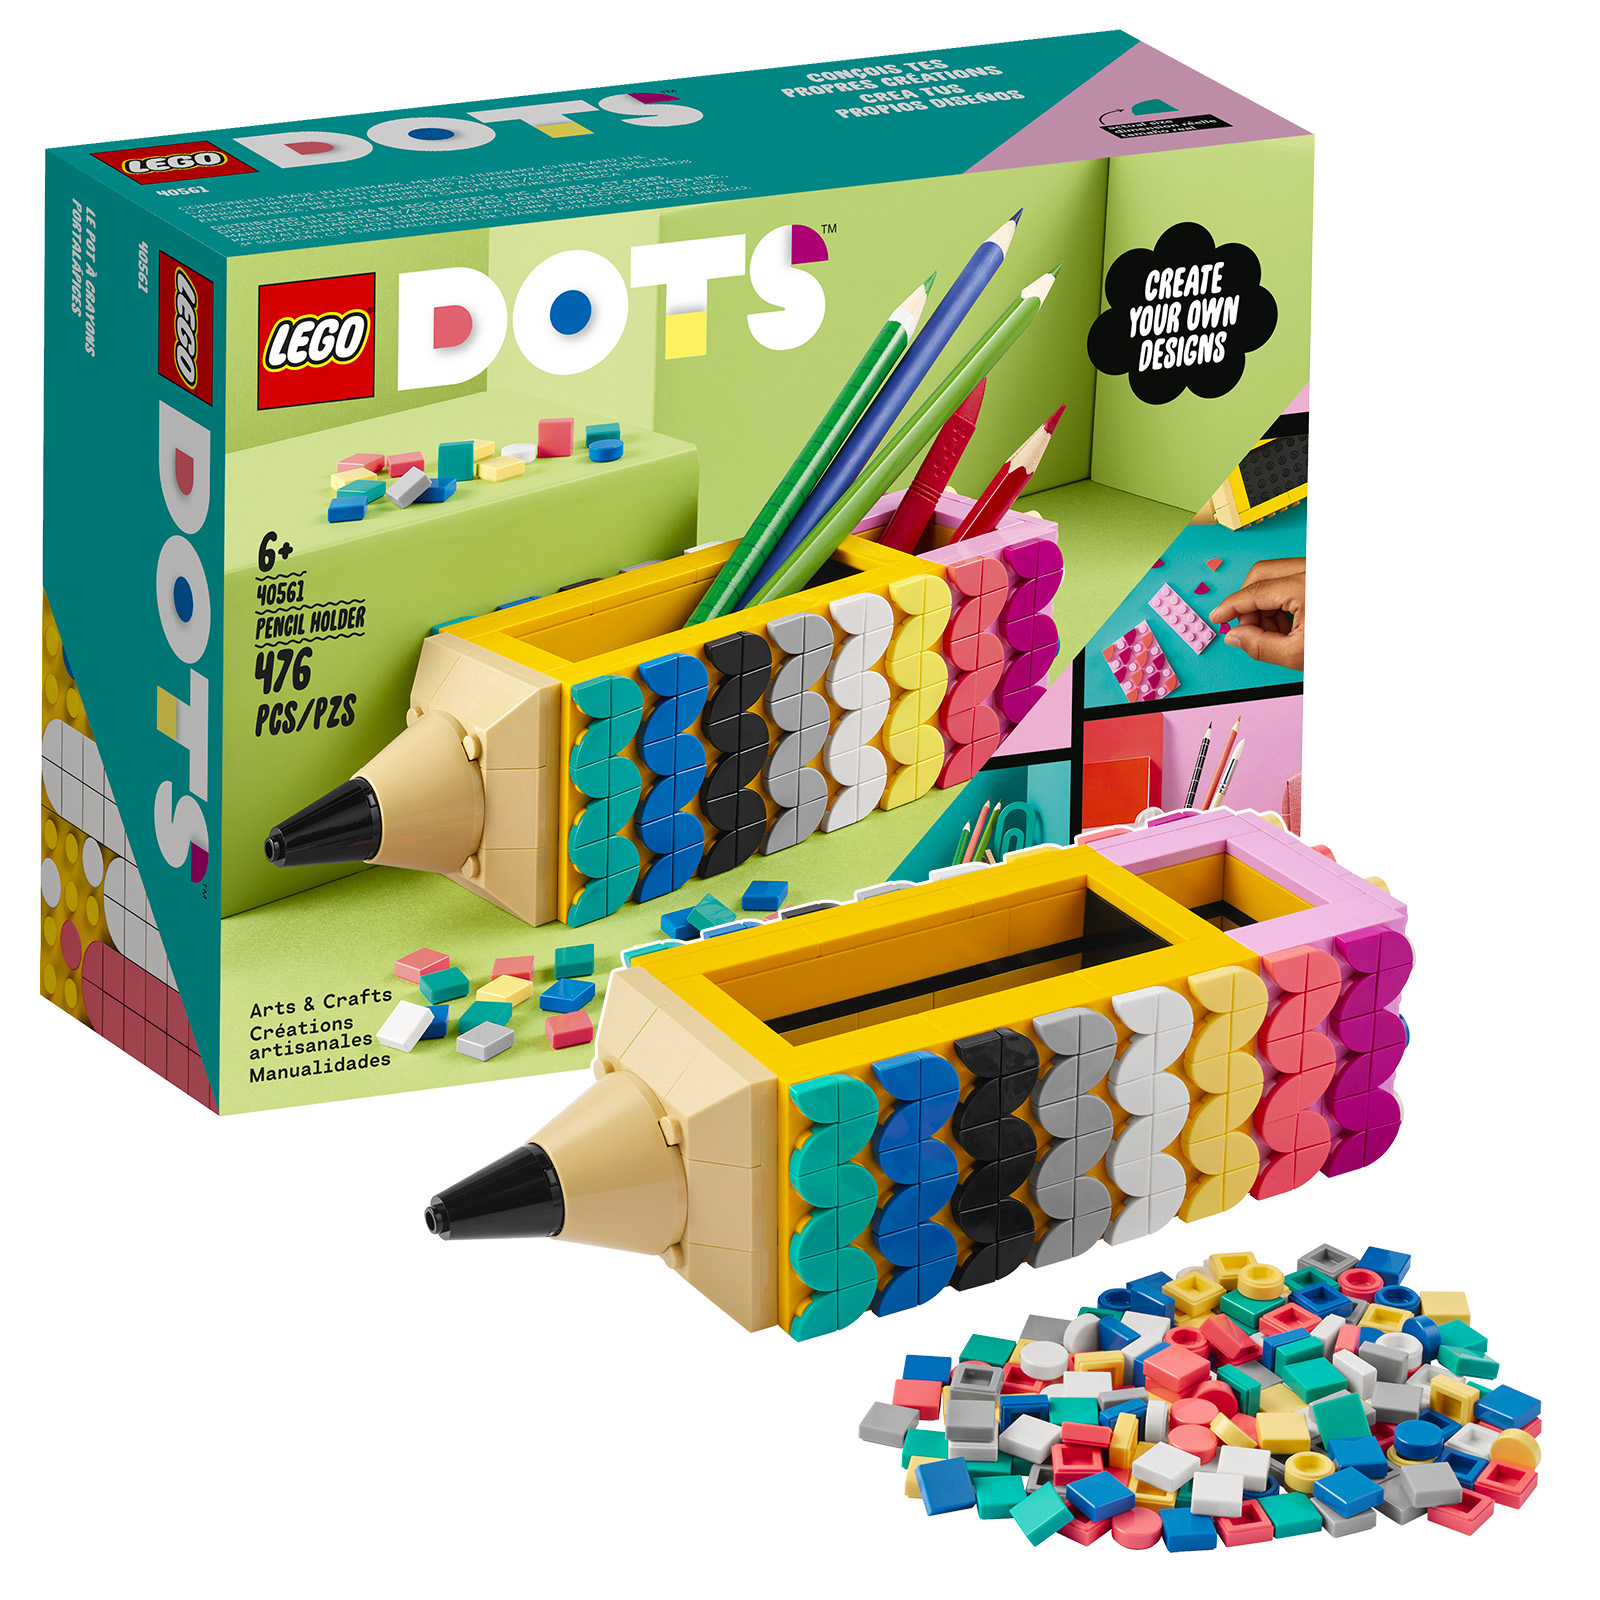 Στο LEGO Shop: δωρεάν σετ μολυβιών DOTS 40561 και πολυτσάντα Super Mario 30509 Yellow Yoshi Fruit Tree